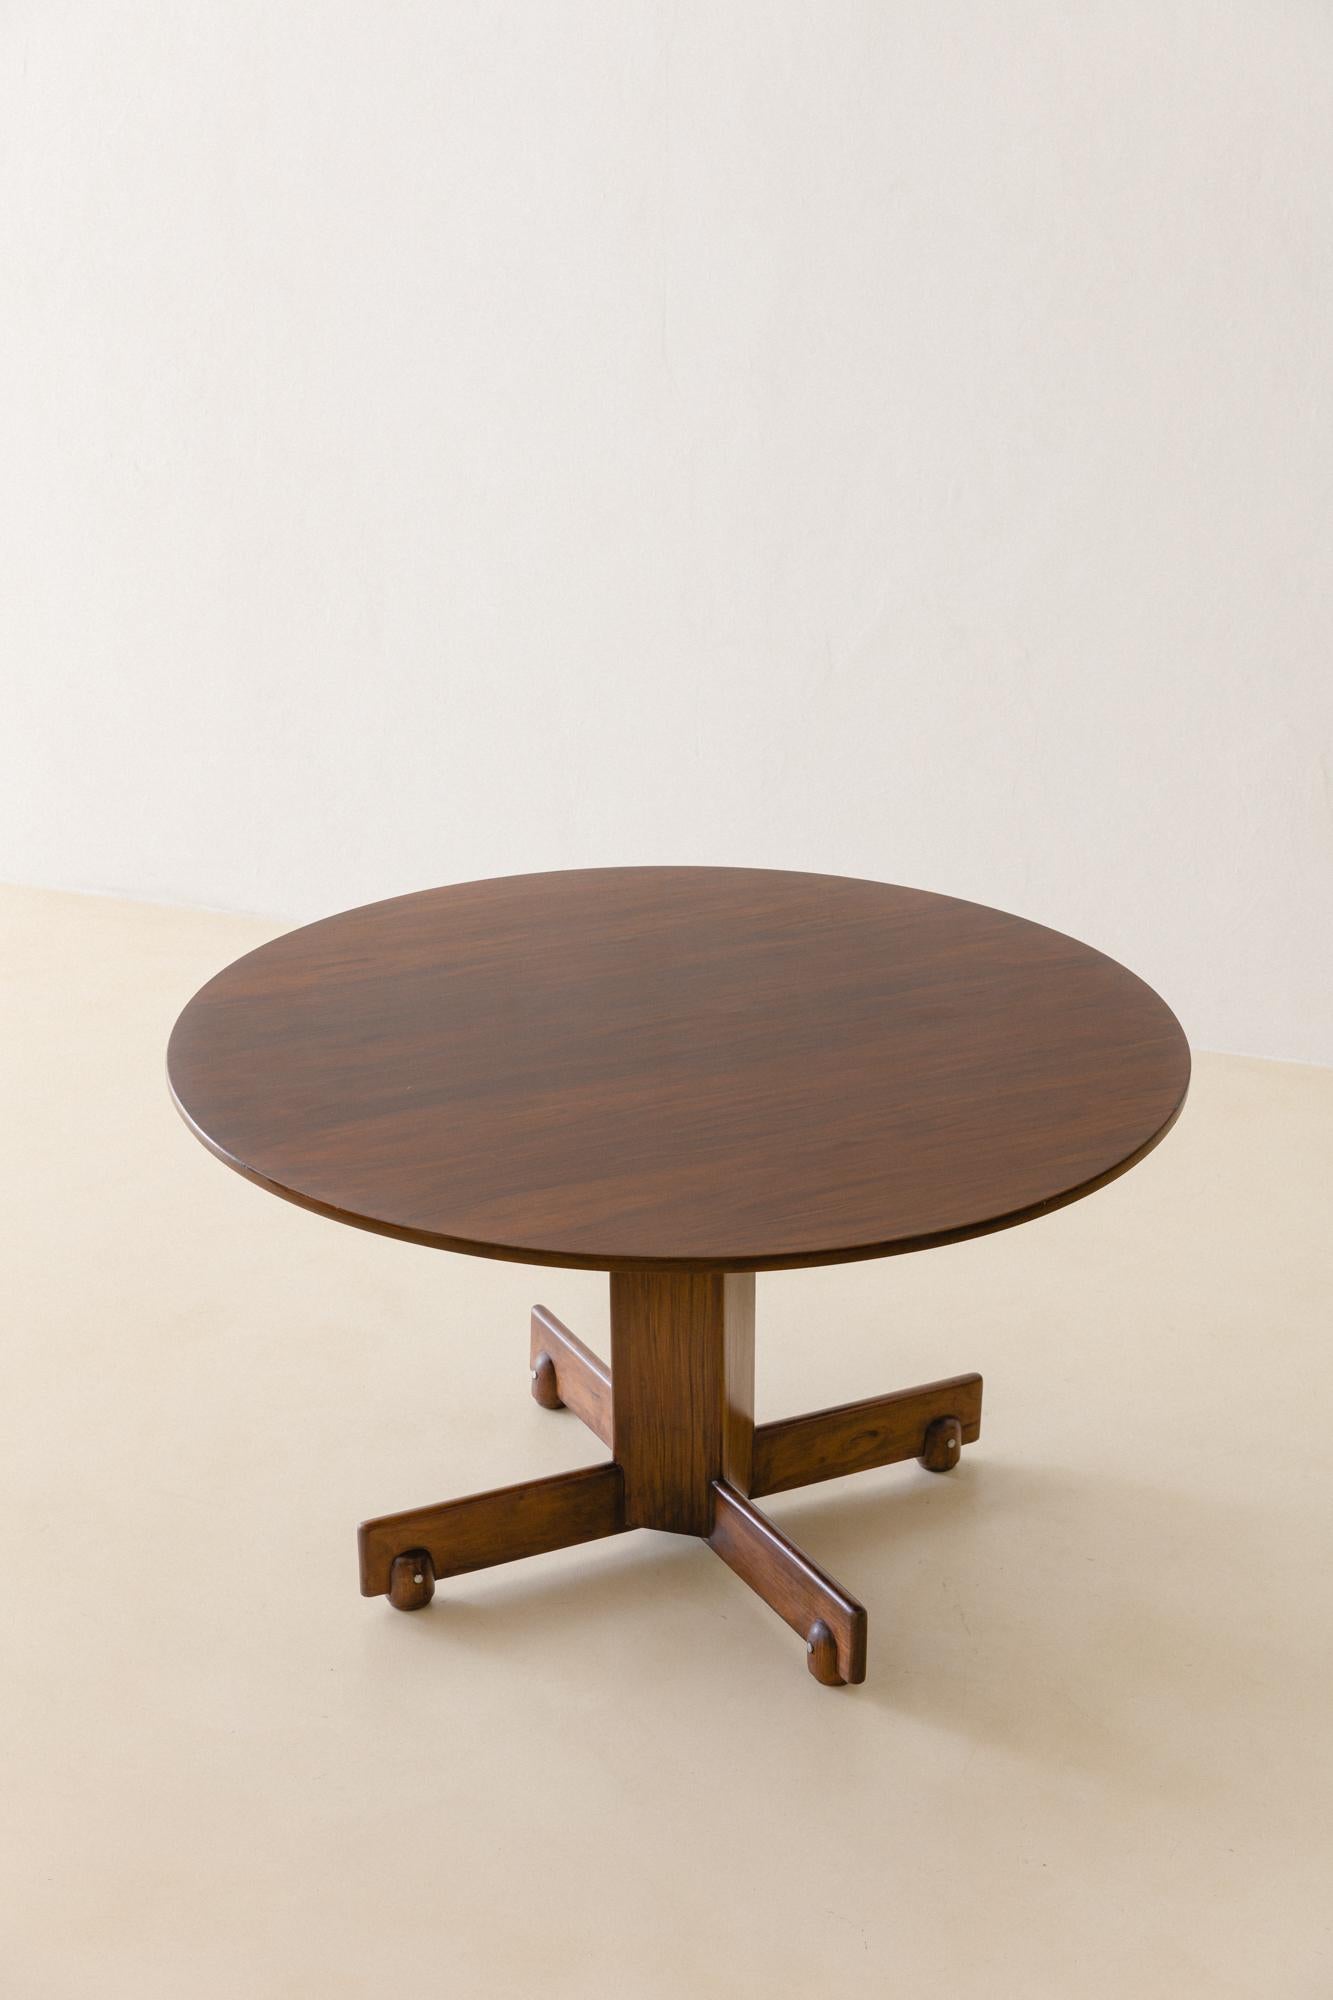 La table Alex est une table arrondie réalisée en bois de rose massif (Jacaranda), dont les pieds et le plateau sont en forme de croix. 

Conçue en 1960 par Sergio Rodrigues (1927-2014), cette table de salle à manger moderne présente des éléments